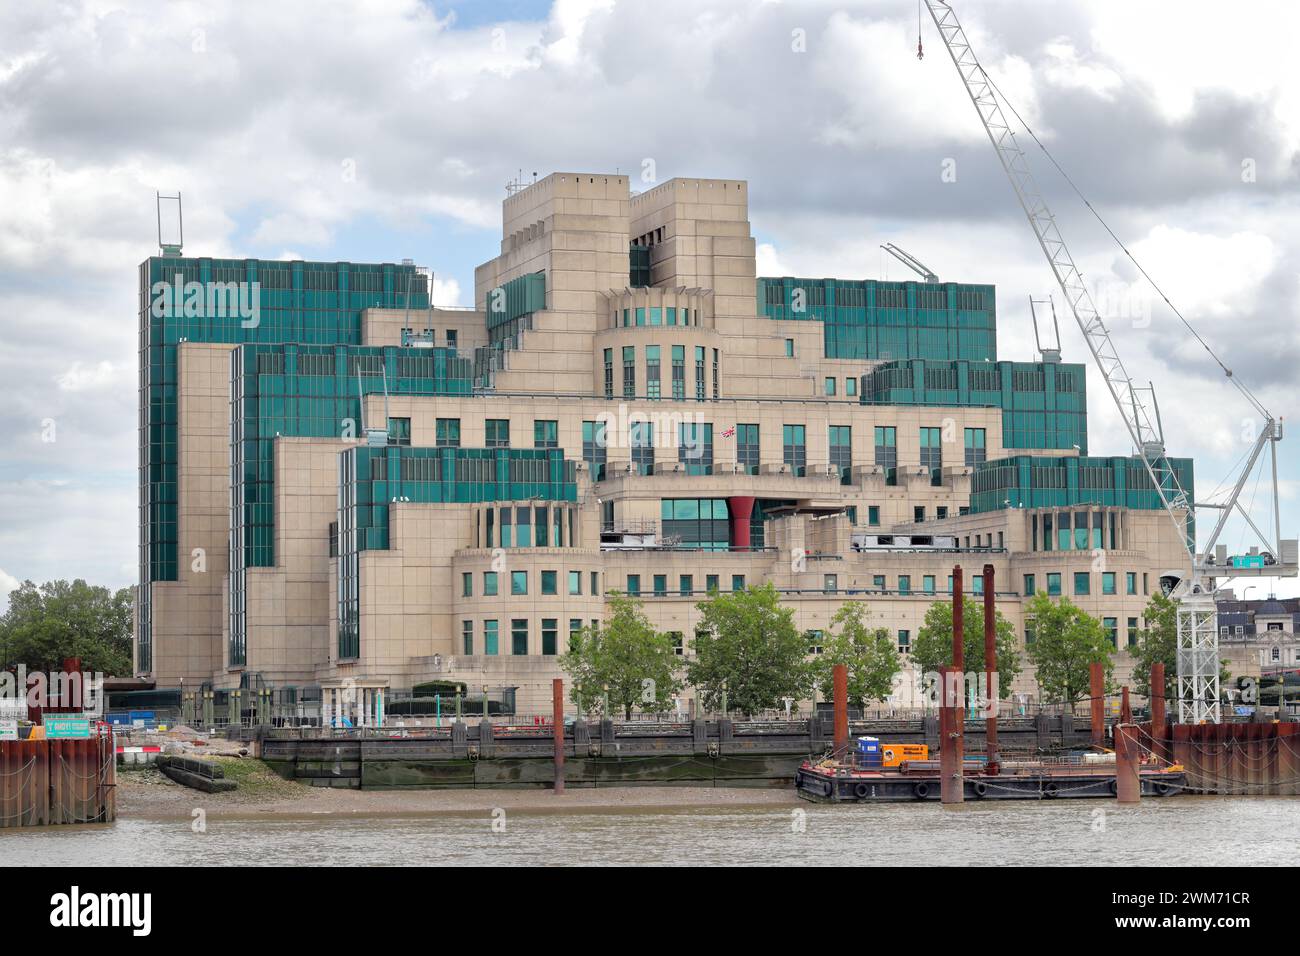 Le bâtiment SIS, également appelé bâtiment MI6, siège du Service de renseignement secret (SIS, MI6) Banque D'Images